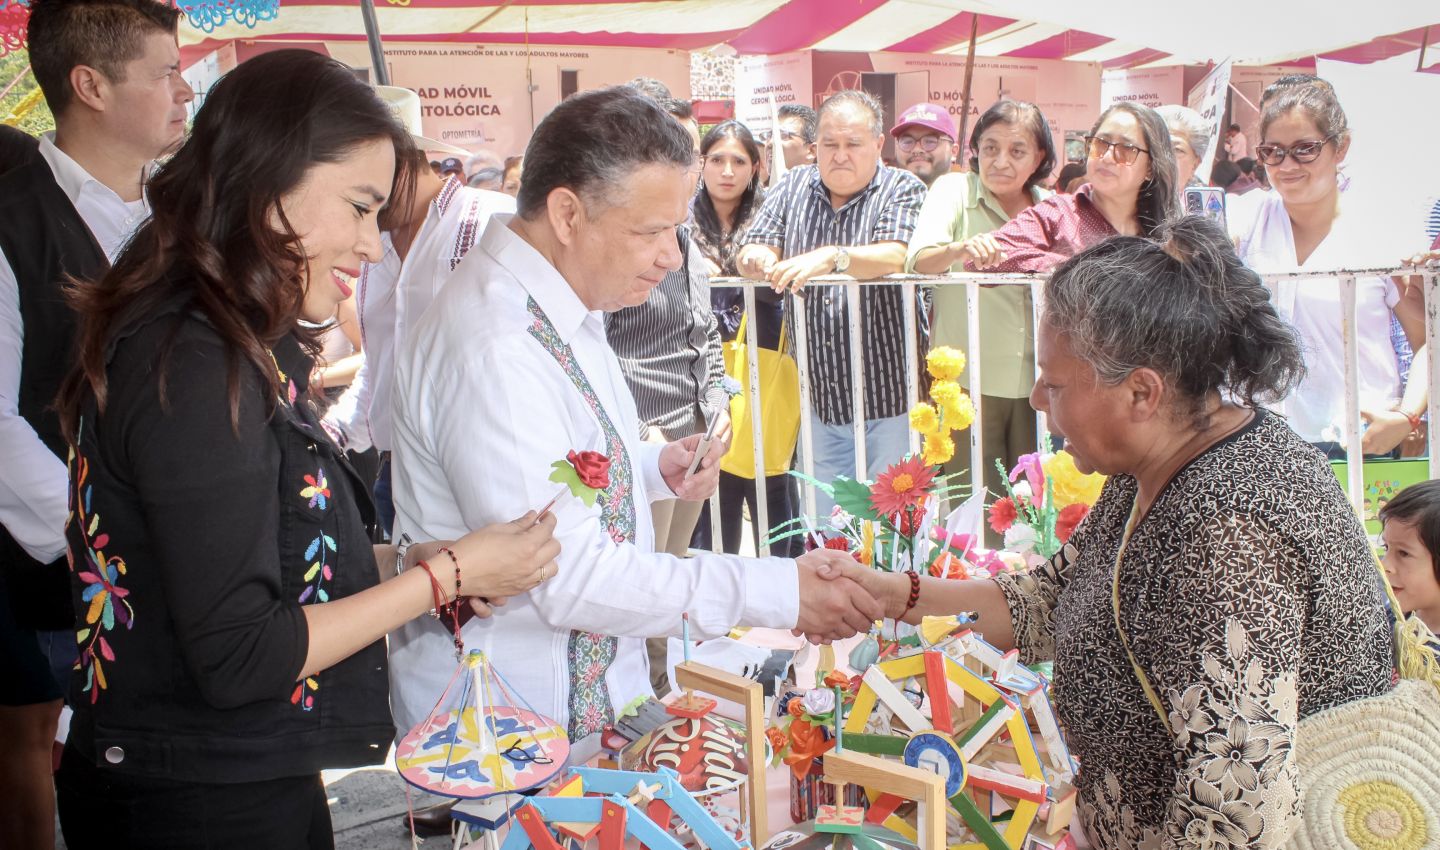 Darán espacios gratuitos y atractivos a artesanos en la Feria de Pachuca para sus ventas